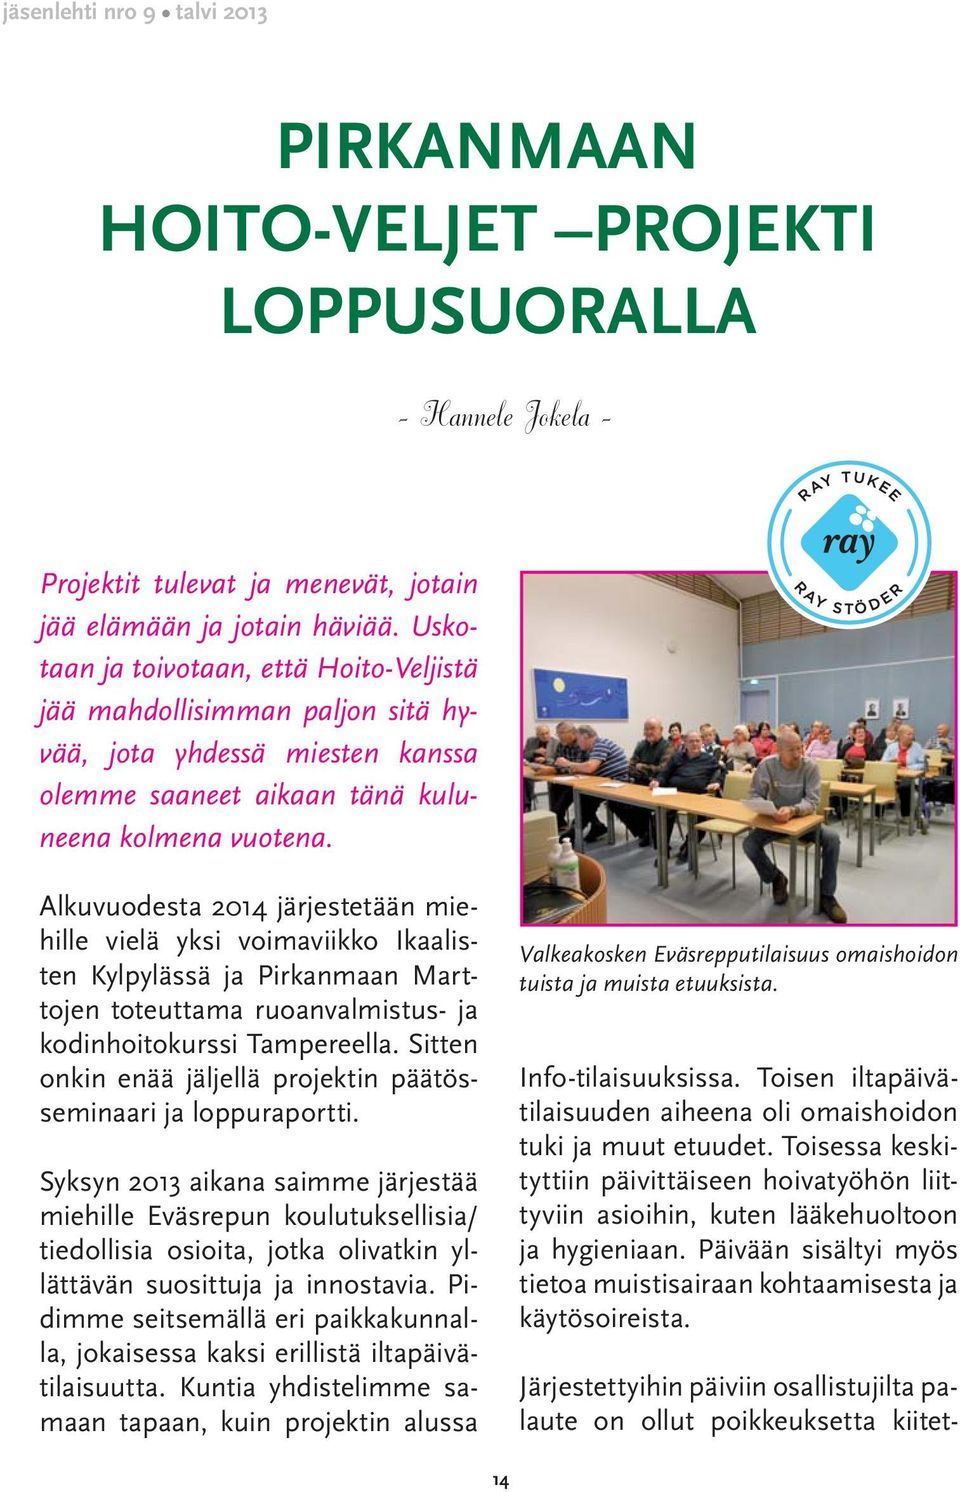 Alkuvuodesta 2014 järjestetään miehille vielä yksi voimaviikko Ikaalisten Kylpylässä ja Pirkanmaan Marttojen toteuttama ruoanvalmistus- ja kodinhoitokurssi Tampereella.